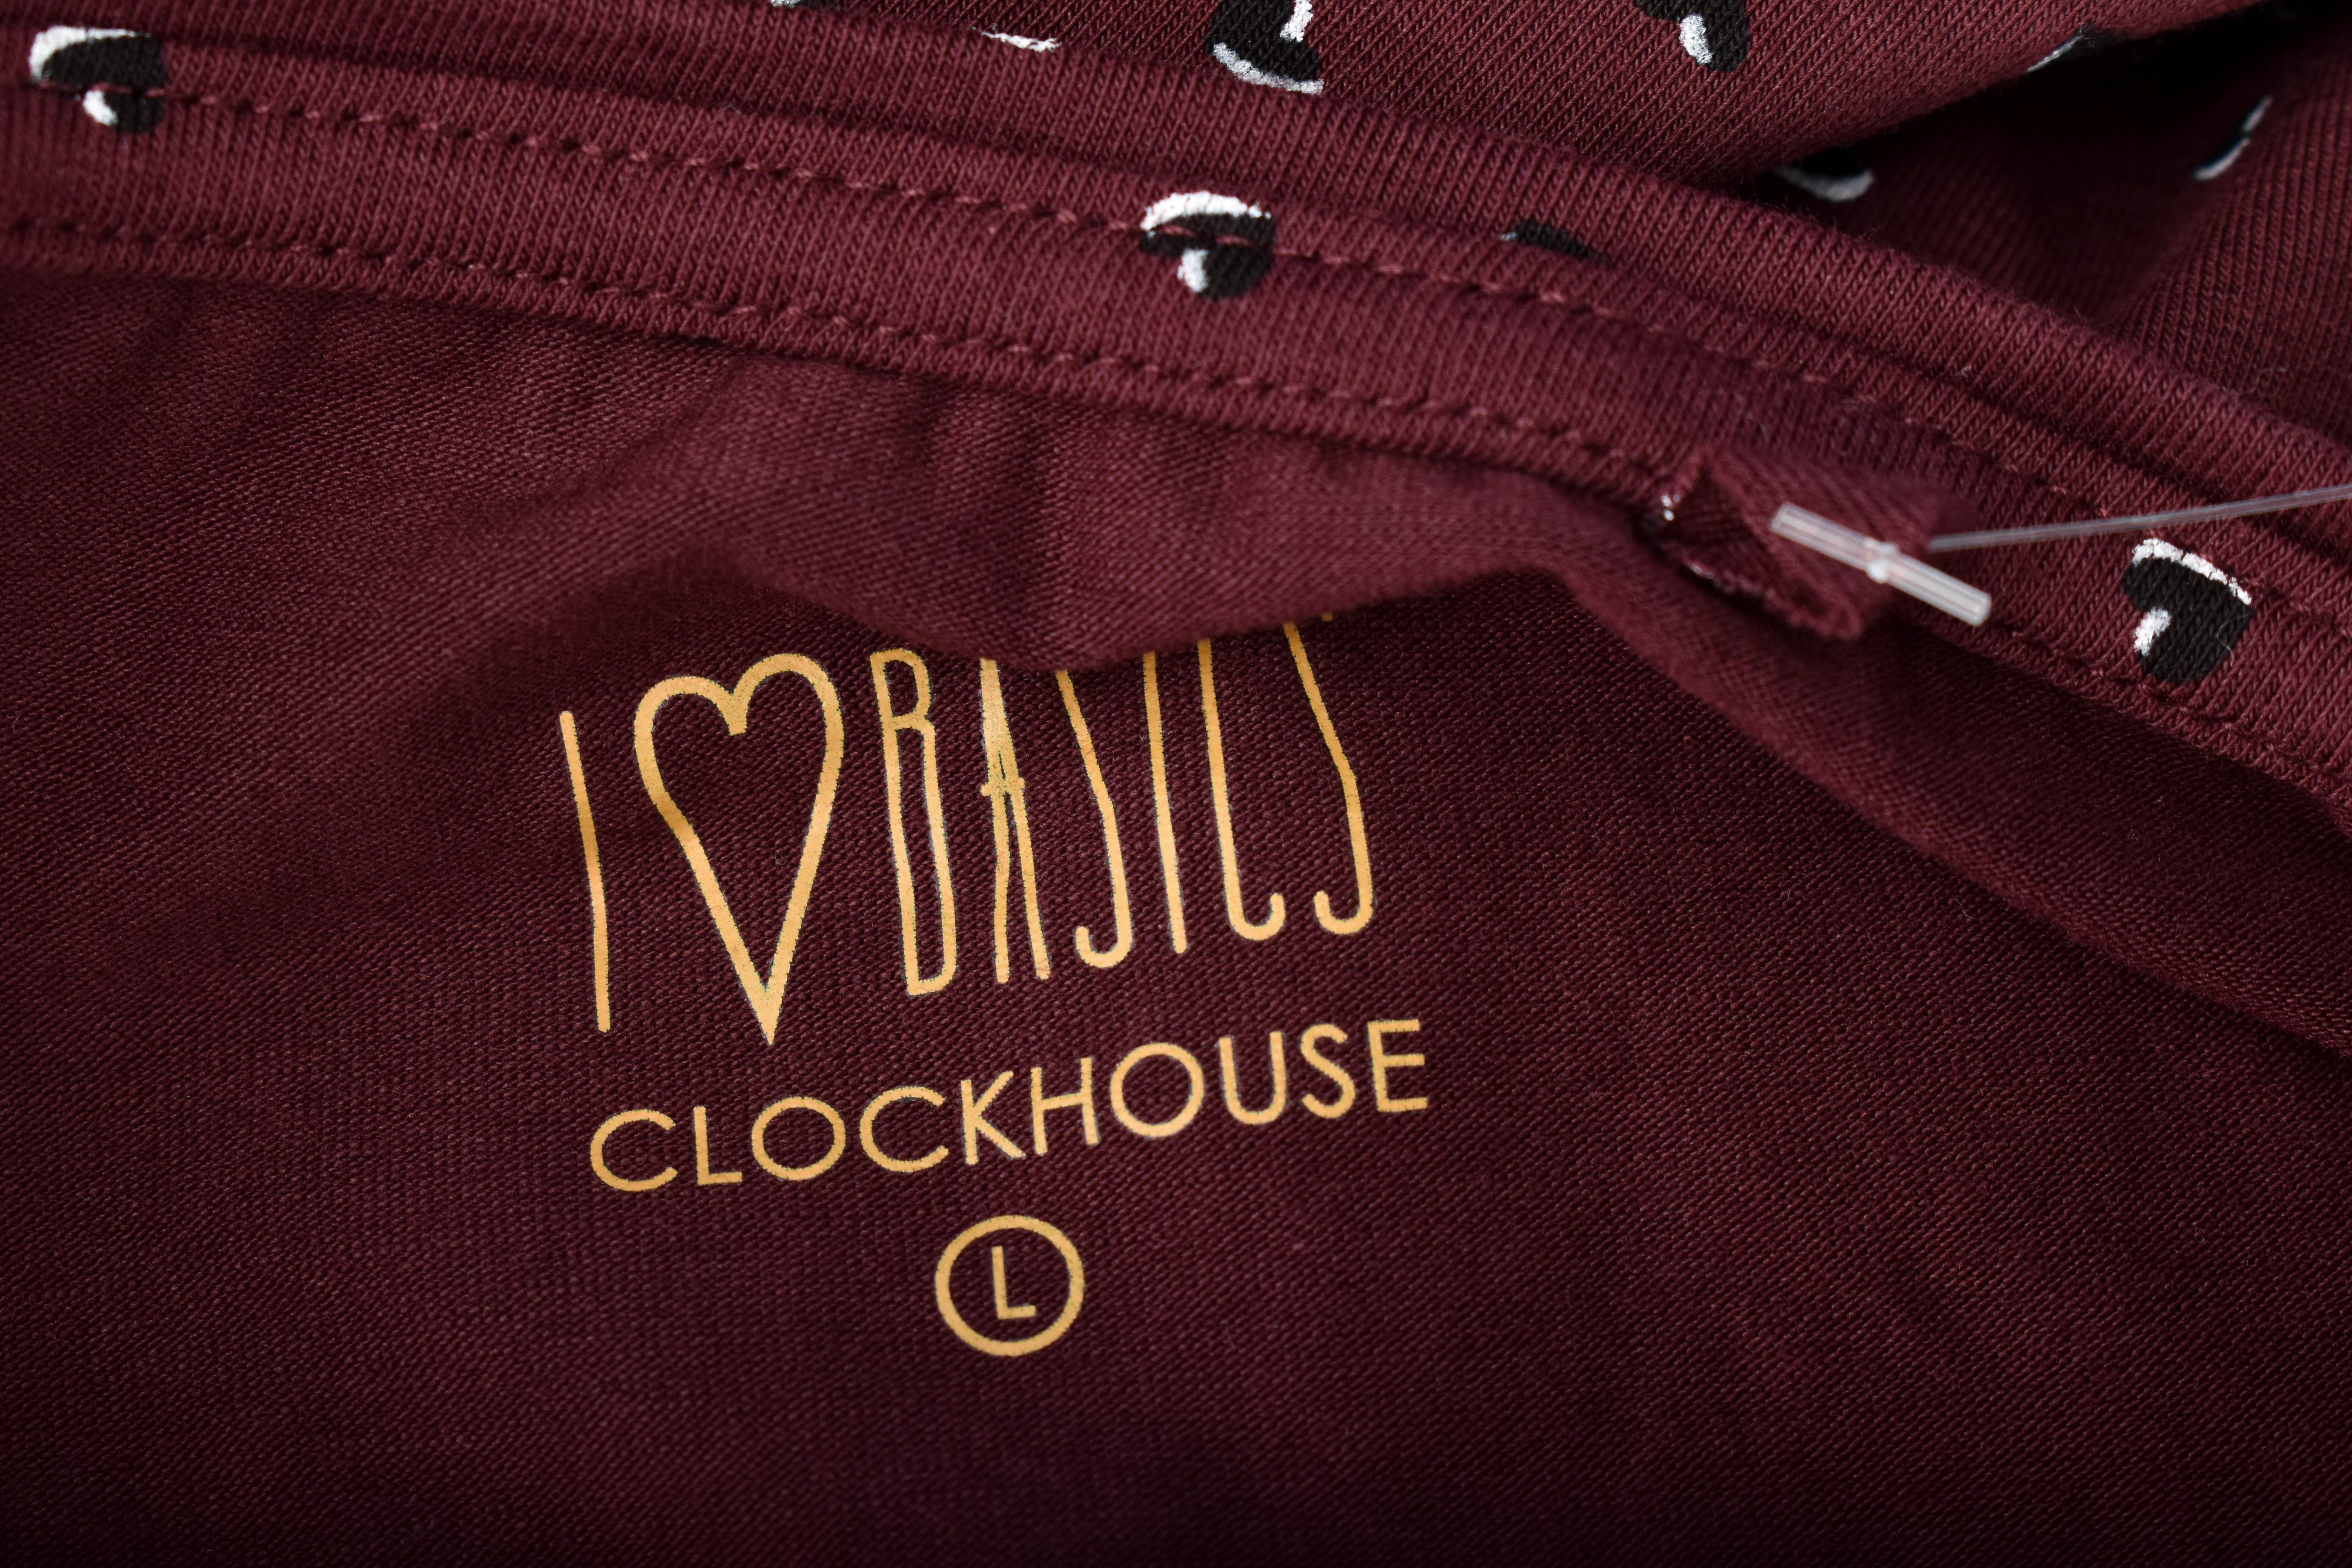 Women's t-shirt - Clockhouse - 2